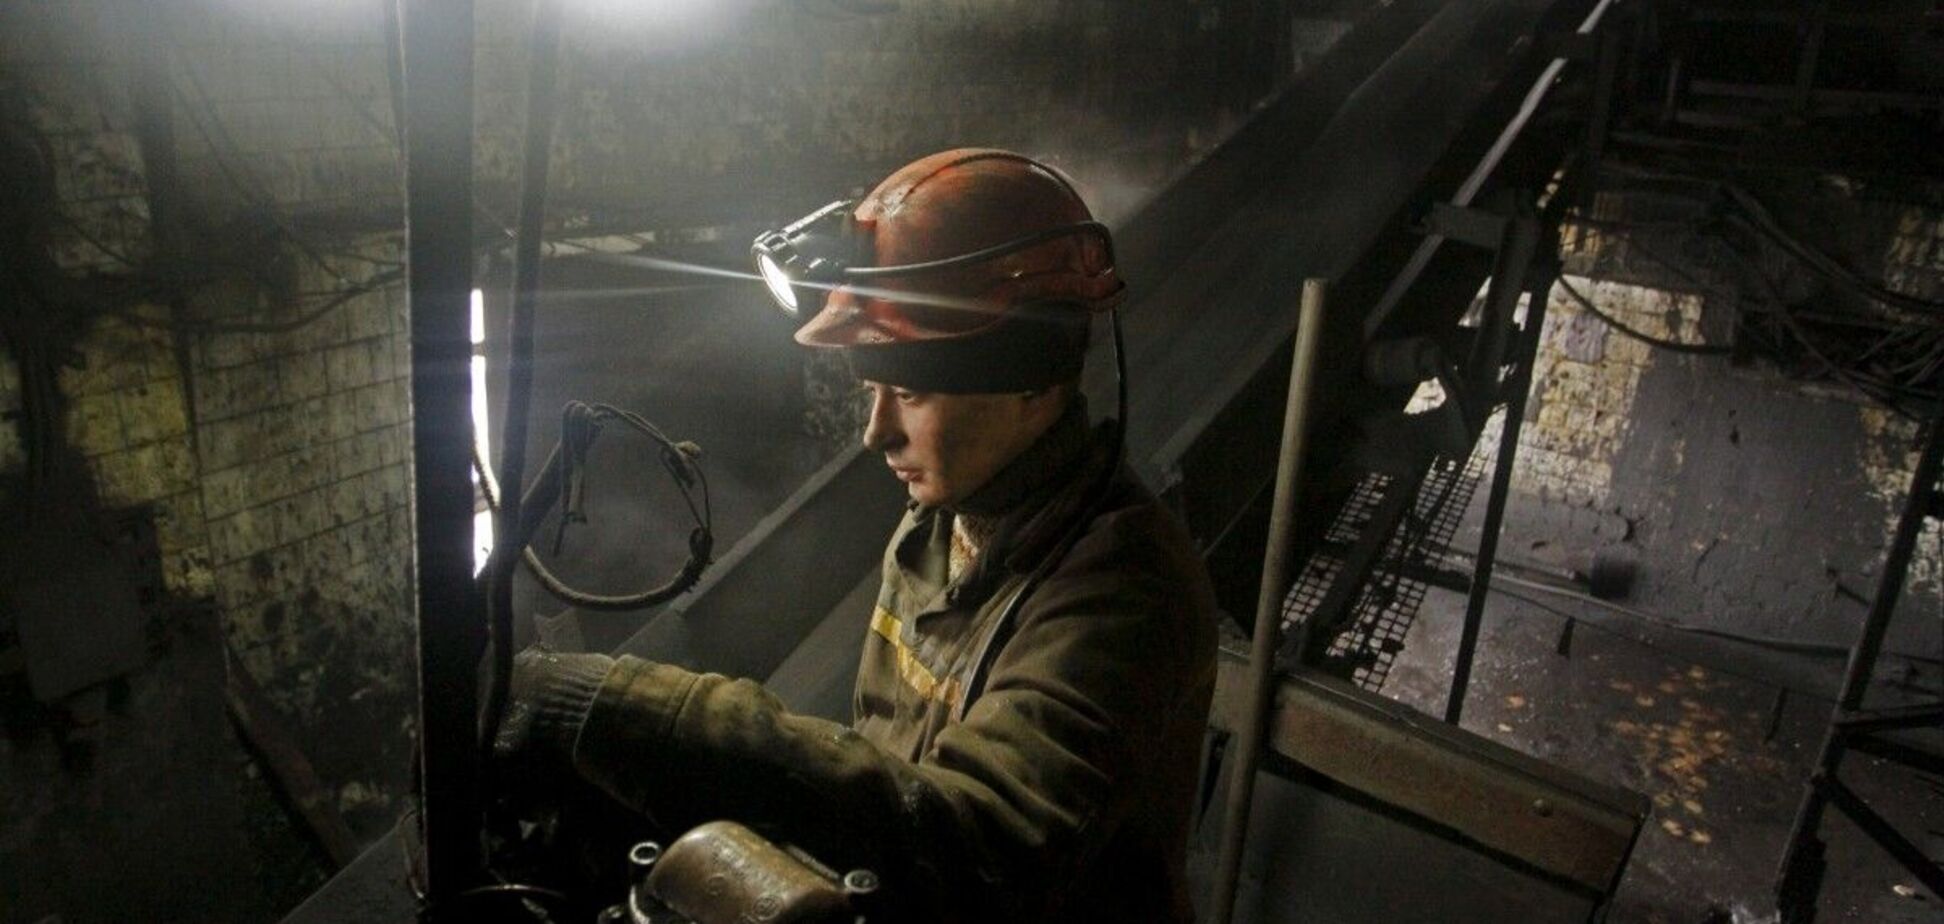 ДТЕК передал государству шахты Добропольеуголь с собственным оборудованием по цене существенно ниже альтернативы